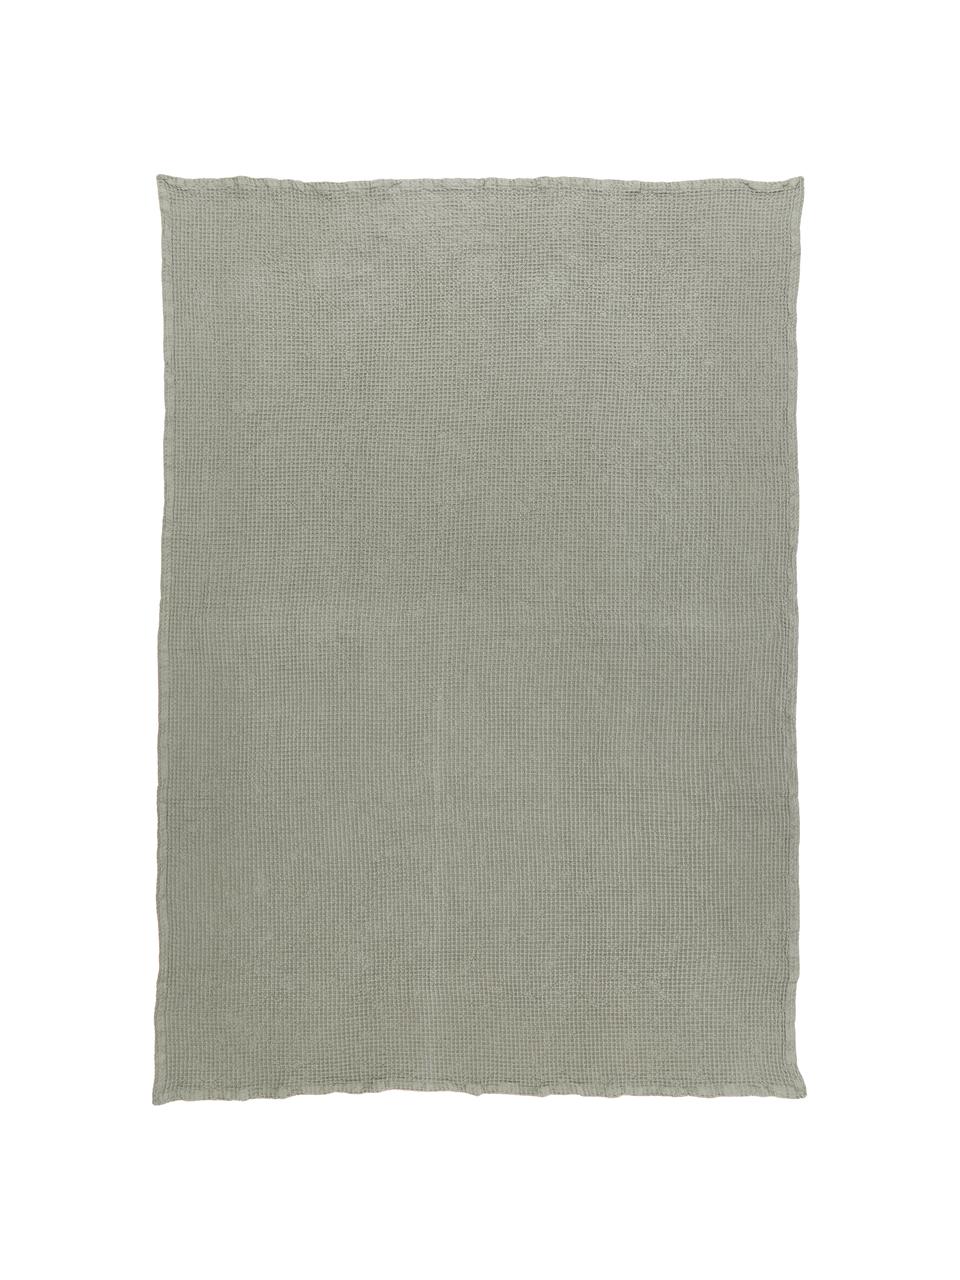 Couvre-lit gaufré coton vert kaki Lois, 100 % coton, Kaki, larg. 260 x long. 260 cm (pour lits jusqu'à 200 x 200 cm)